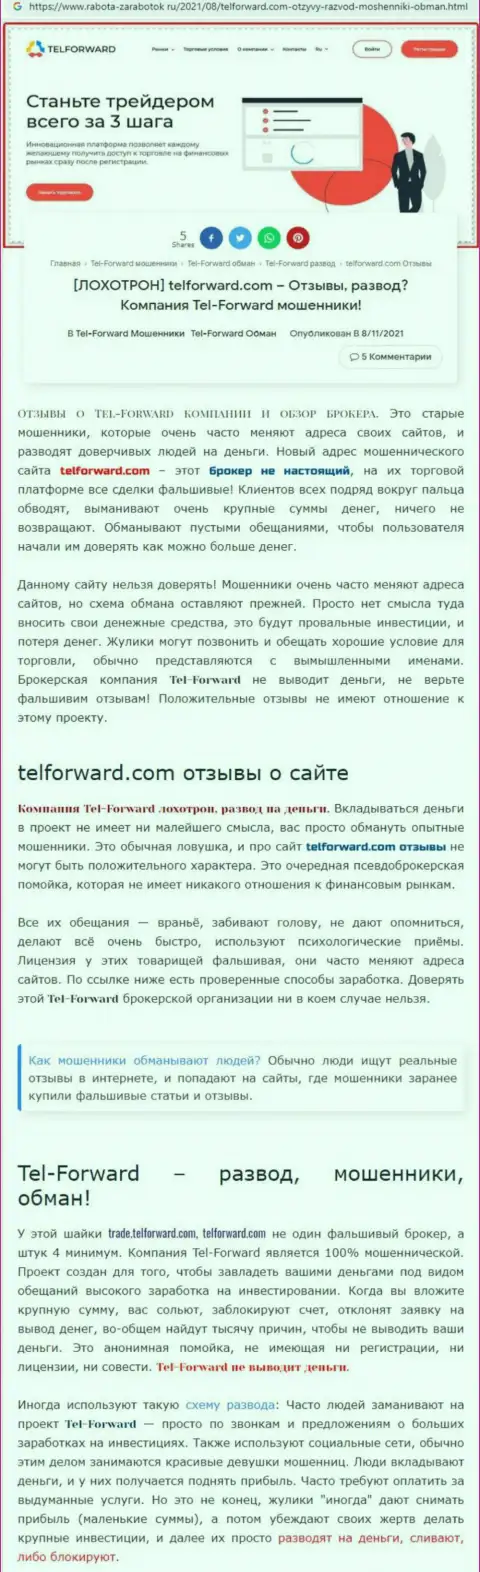 Tel-Forward - это МОШЕННИКИ !!! Условия торгов, как ловушка для доверчивых людей - обзор мошенничества